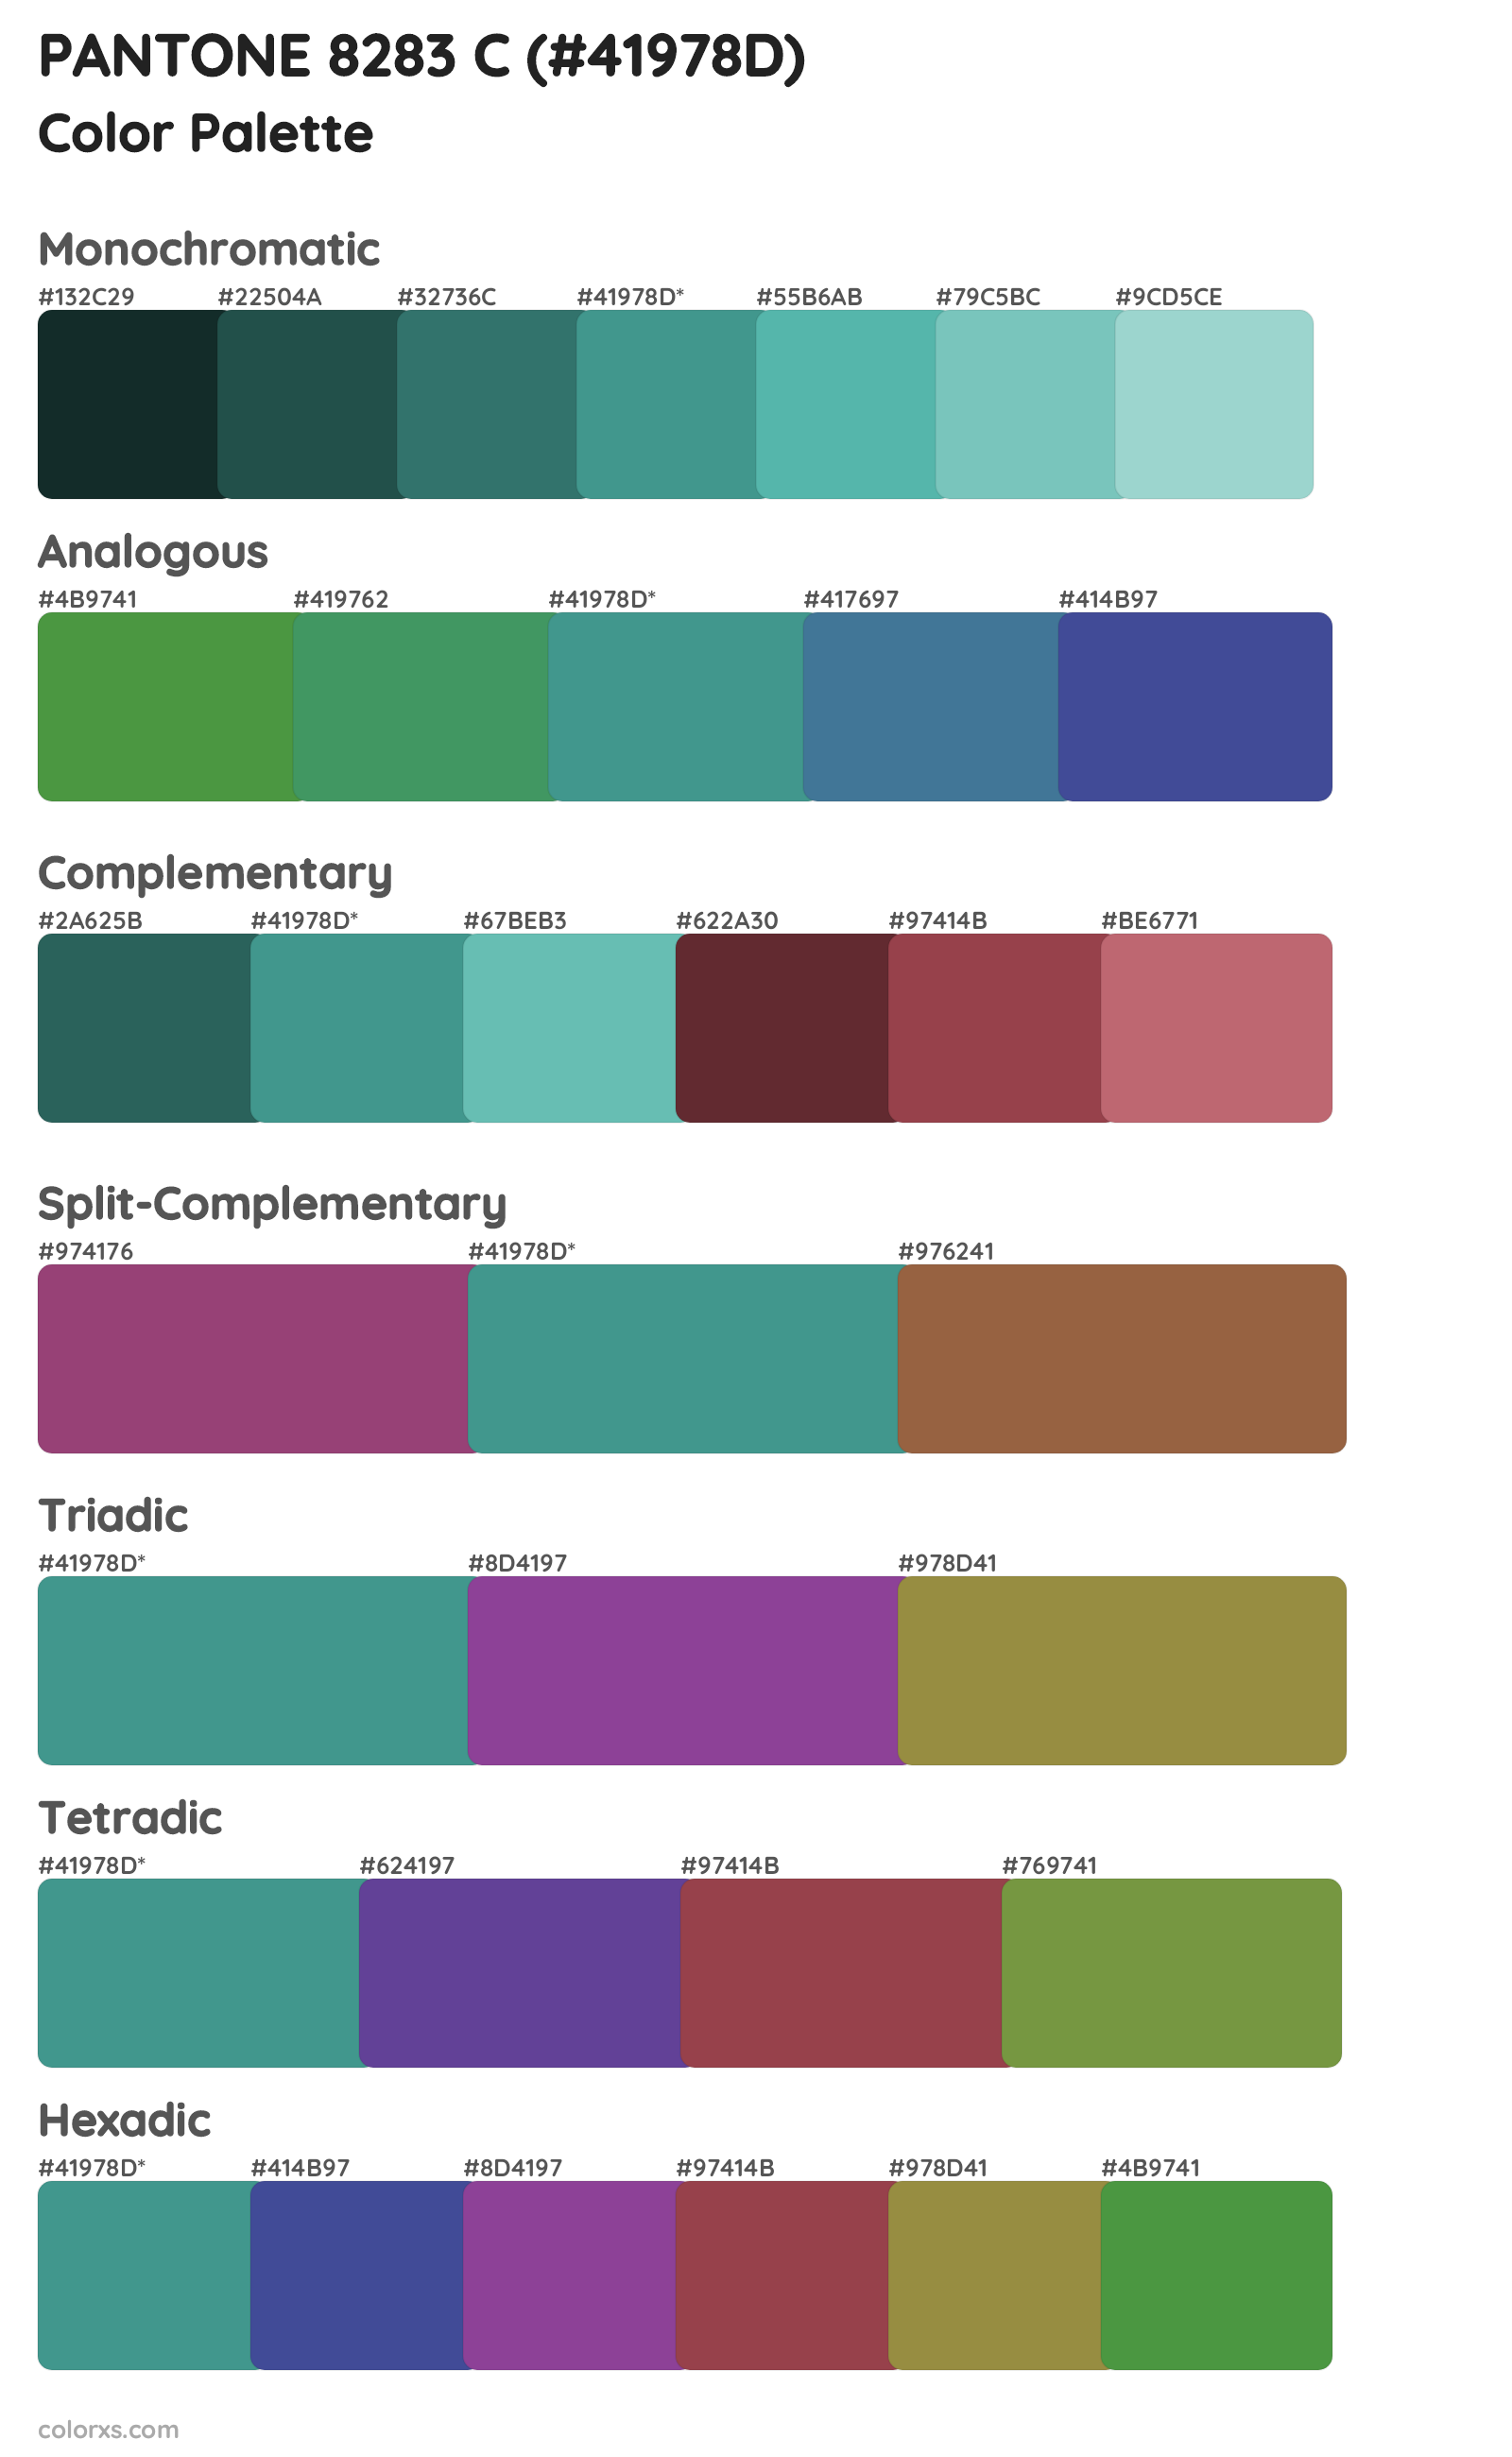 PANTONE 8283 C Color Scheme Palettes